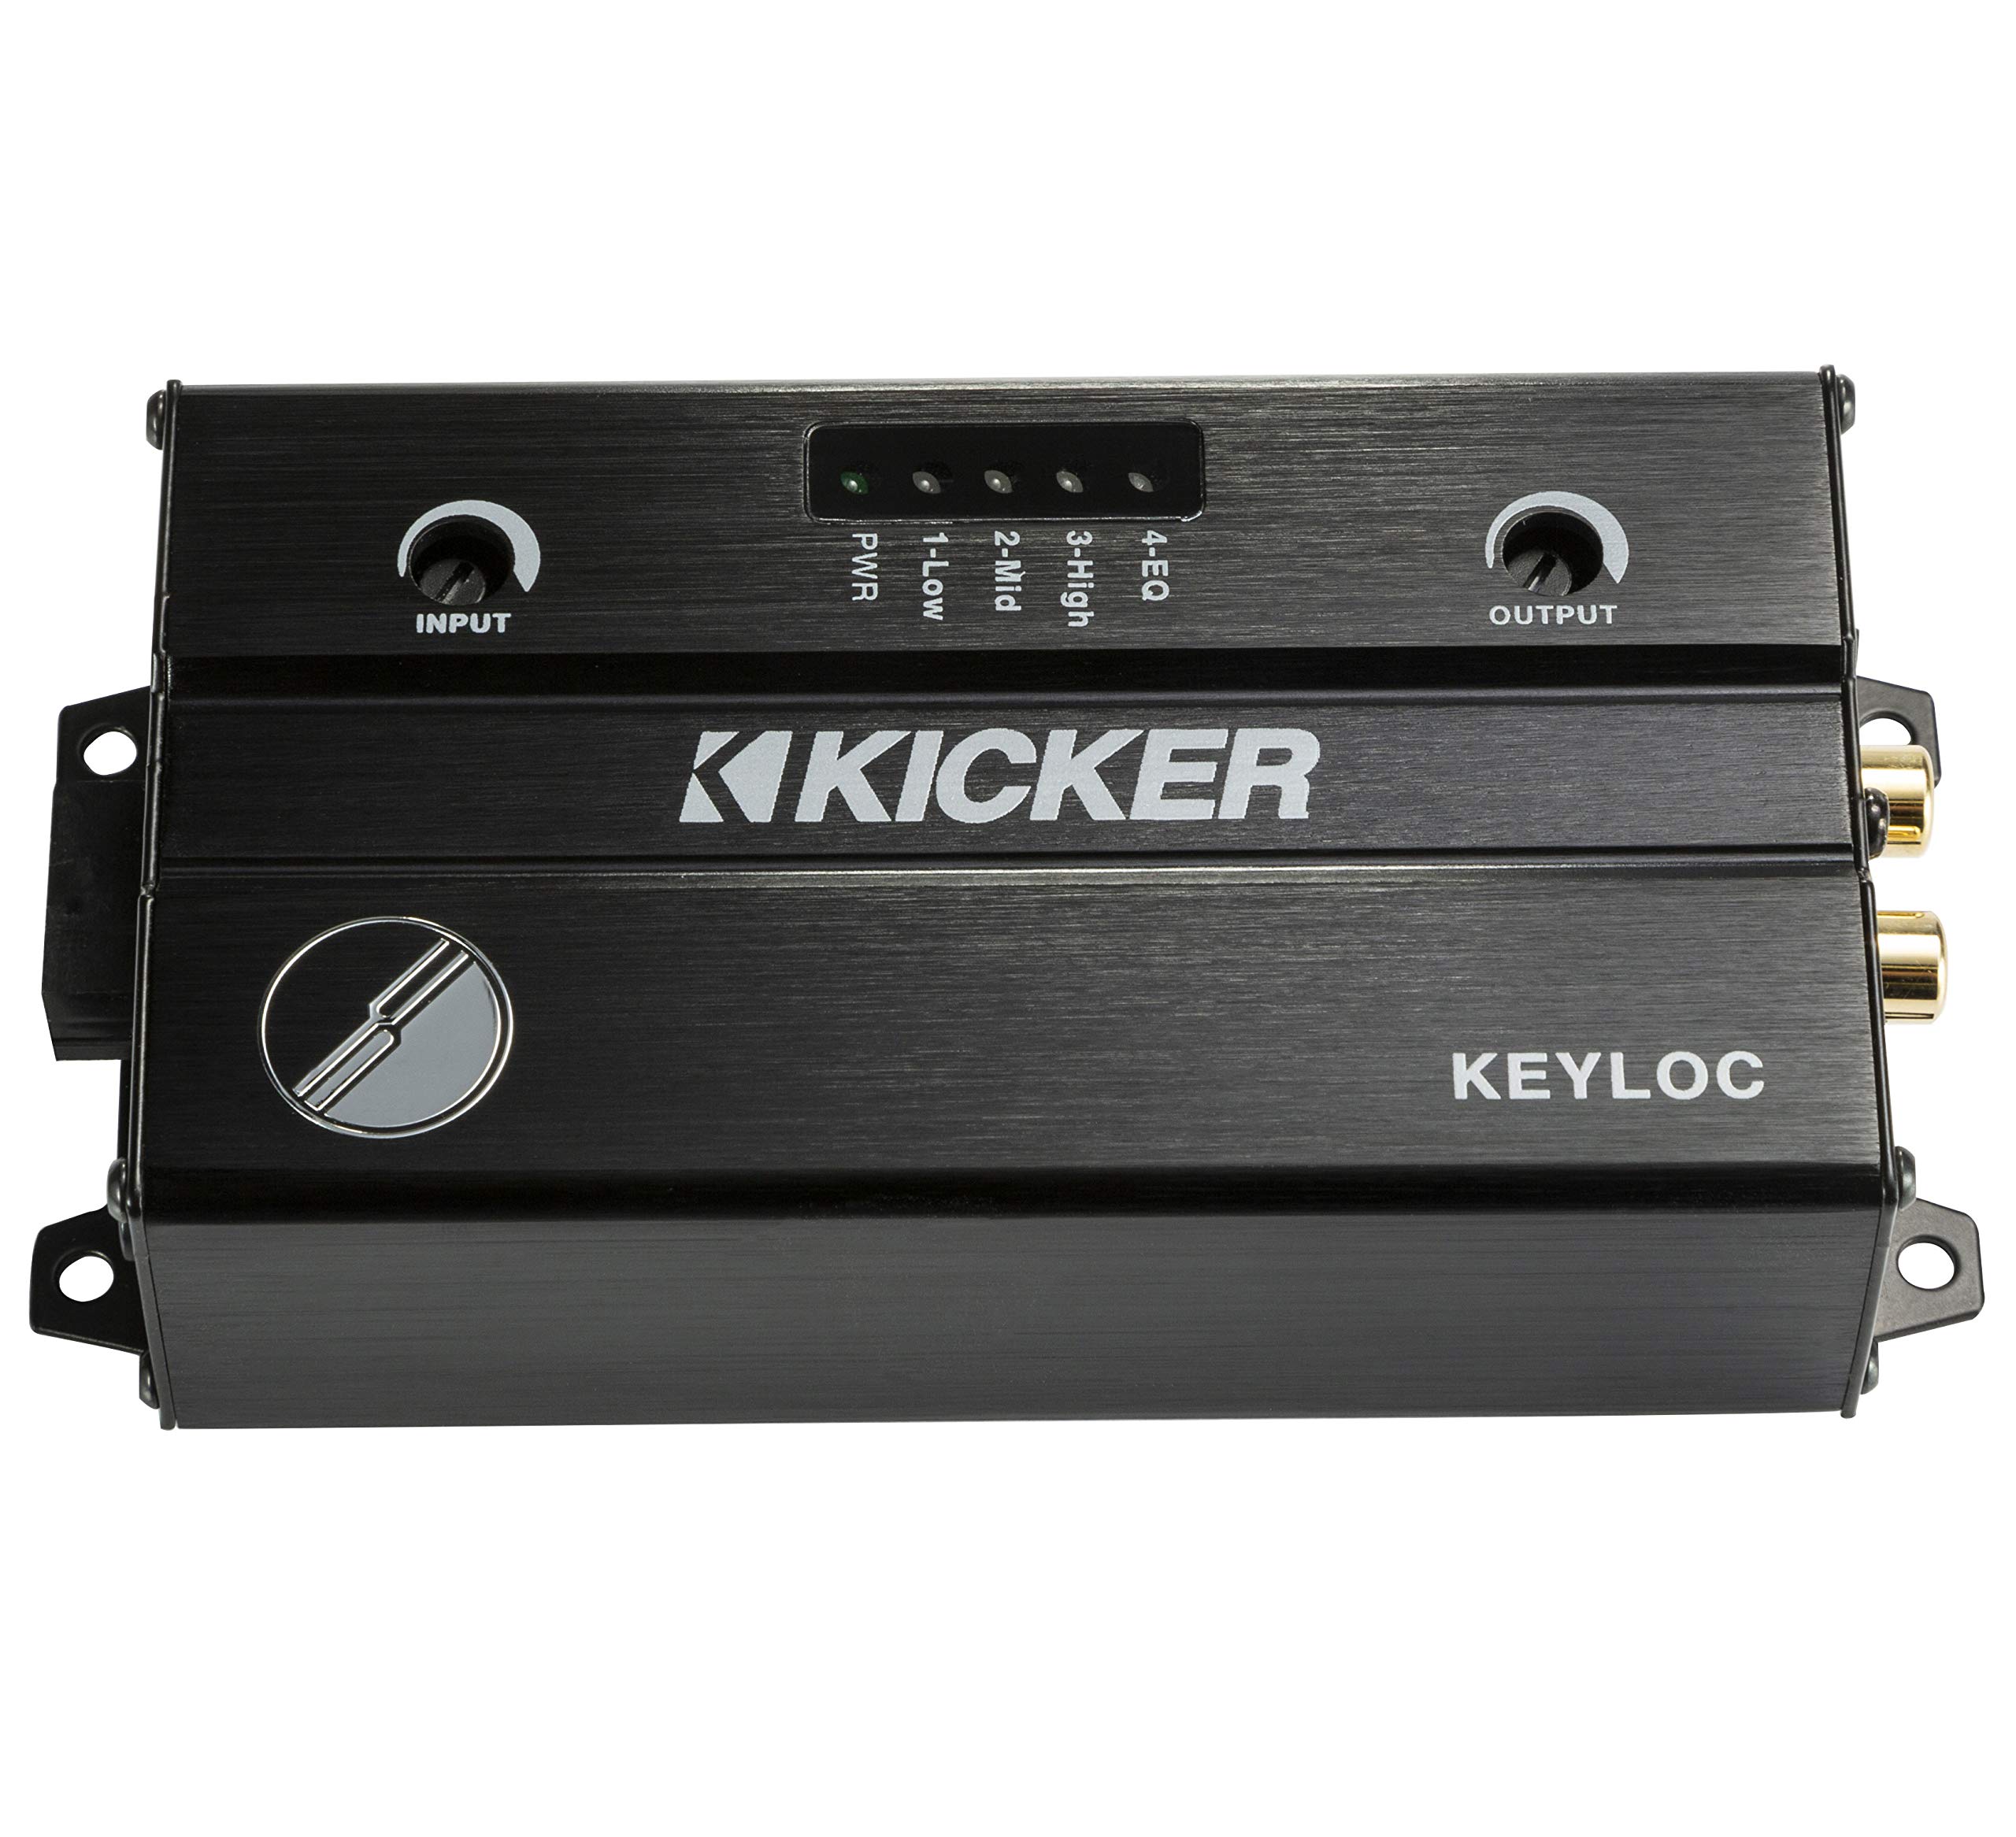 Kicker 47KEYLOC 스마트 2 채널 라인 출력 컨버터 간편한 공장 라디오 설정...